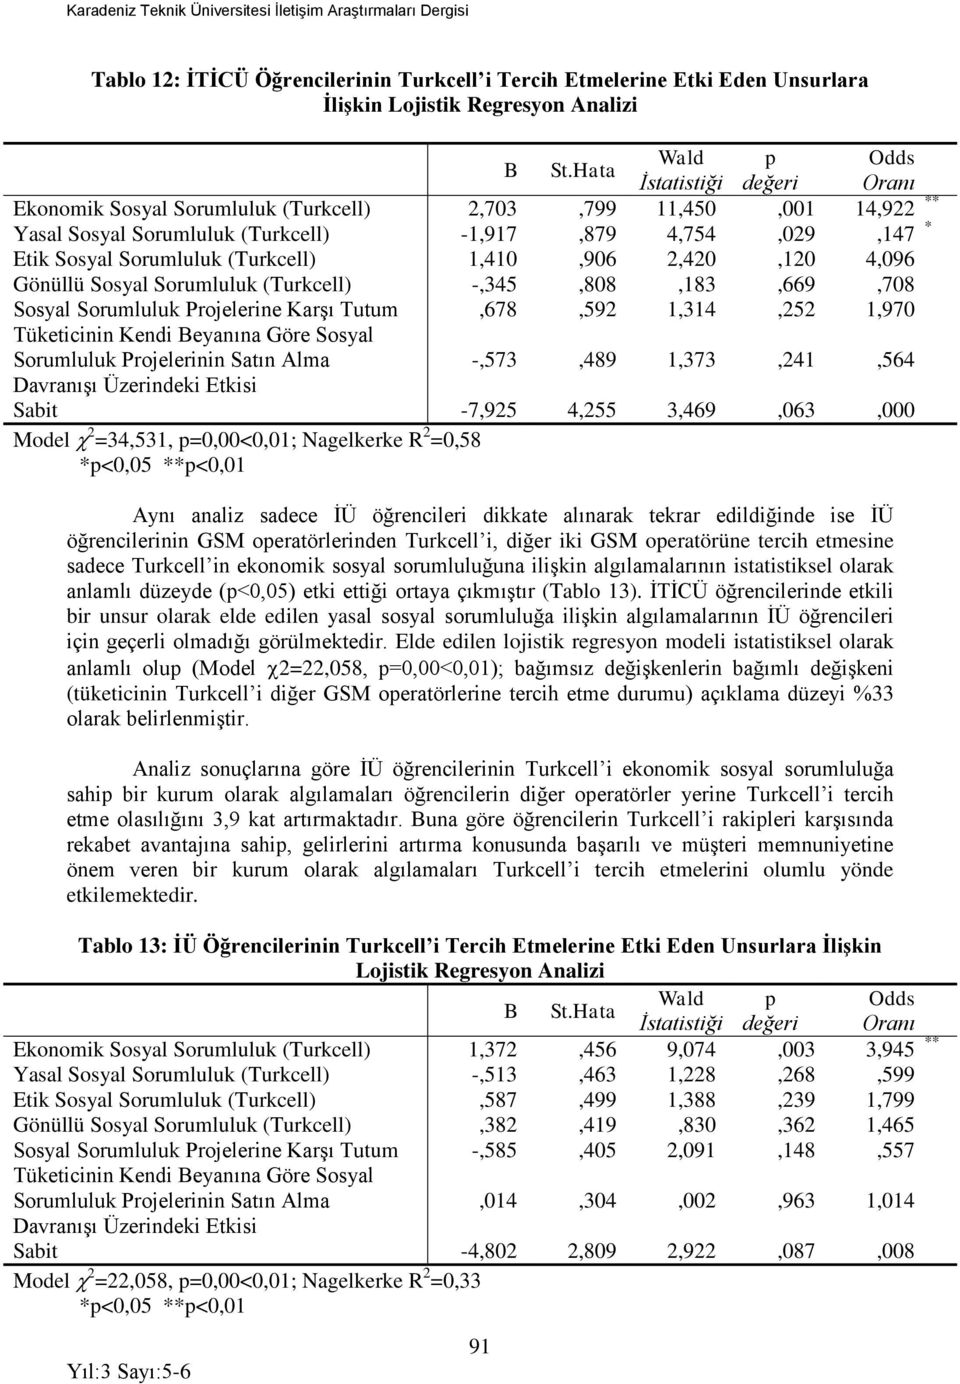 (Turkcell) 1,410,906 2,420,120 4,096 Gönüllü Sosyal Sorumluluk (Turkcell) -,345,808,183,669,708 Sosyal Sorumluluk Projelerine Karşı Tutum,678,592 1,314,252 1,970 Tüketicinin Kendi Beyanına Göre